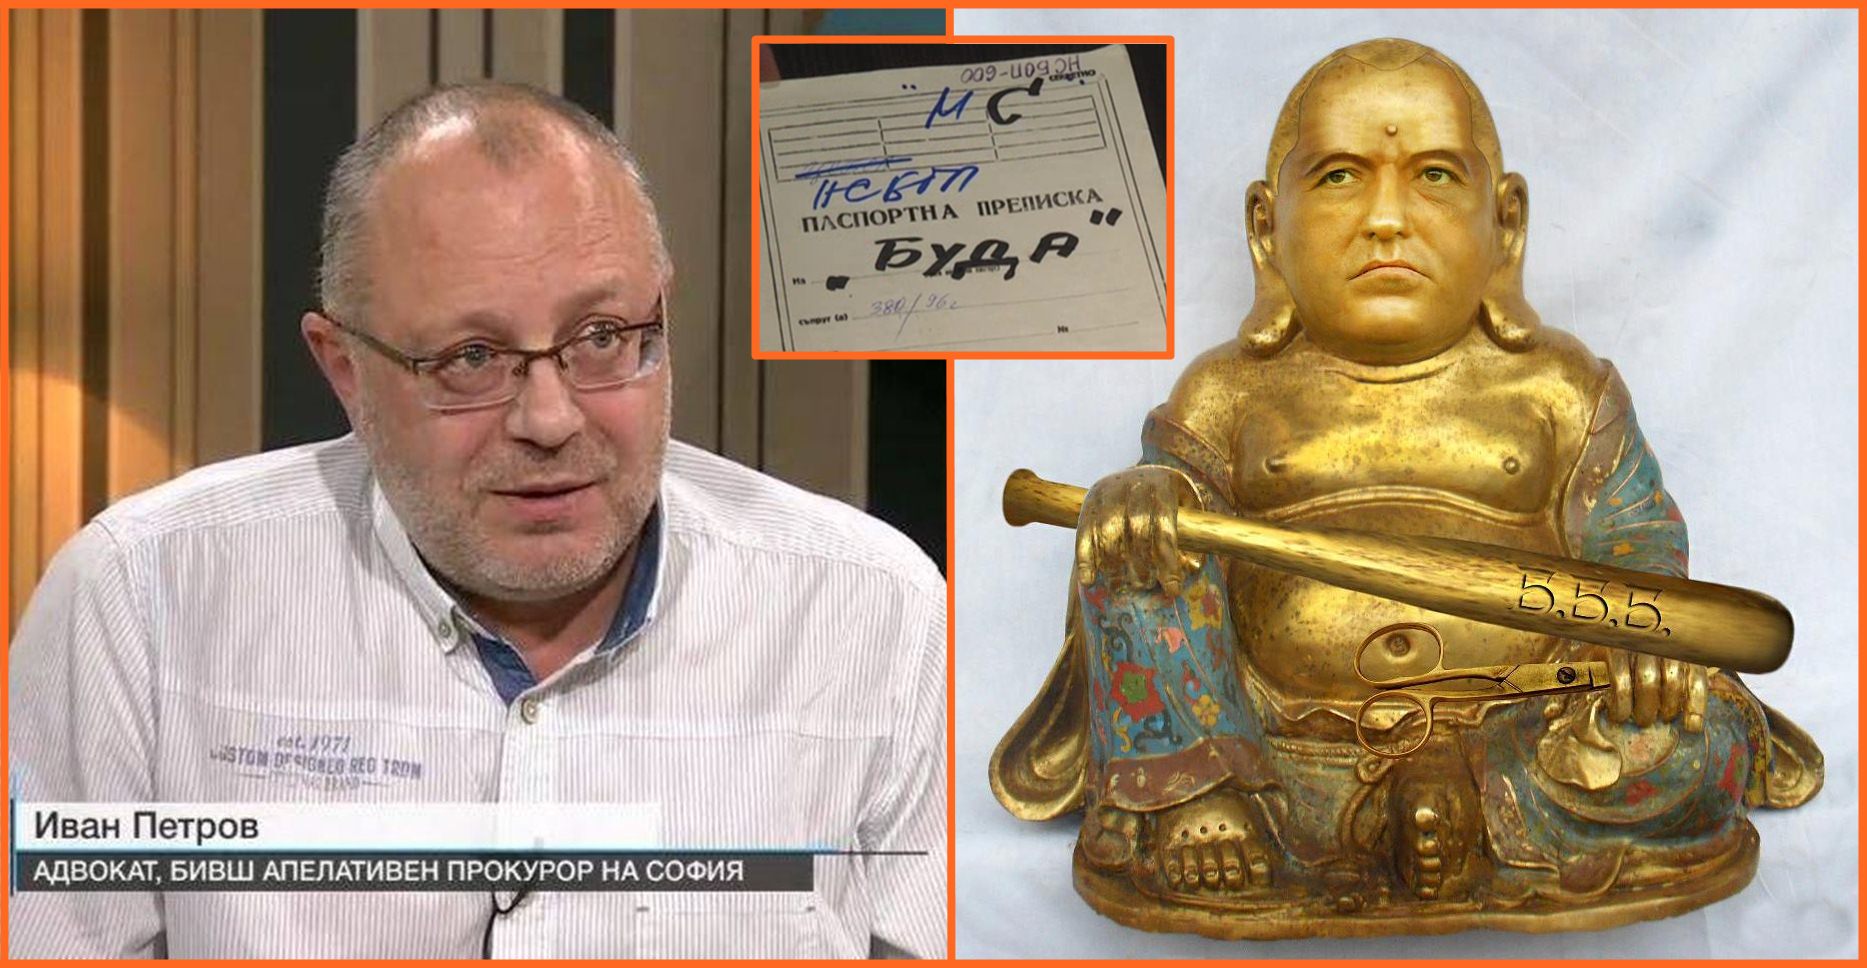 Иван Петров: Той не е човек - той е Буда